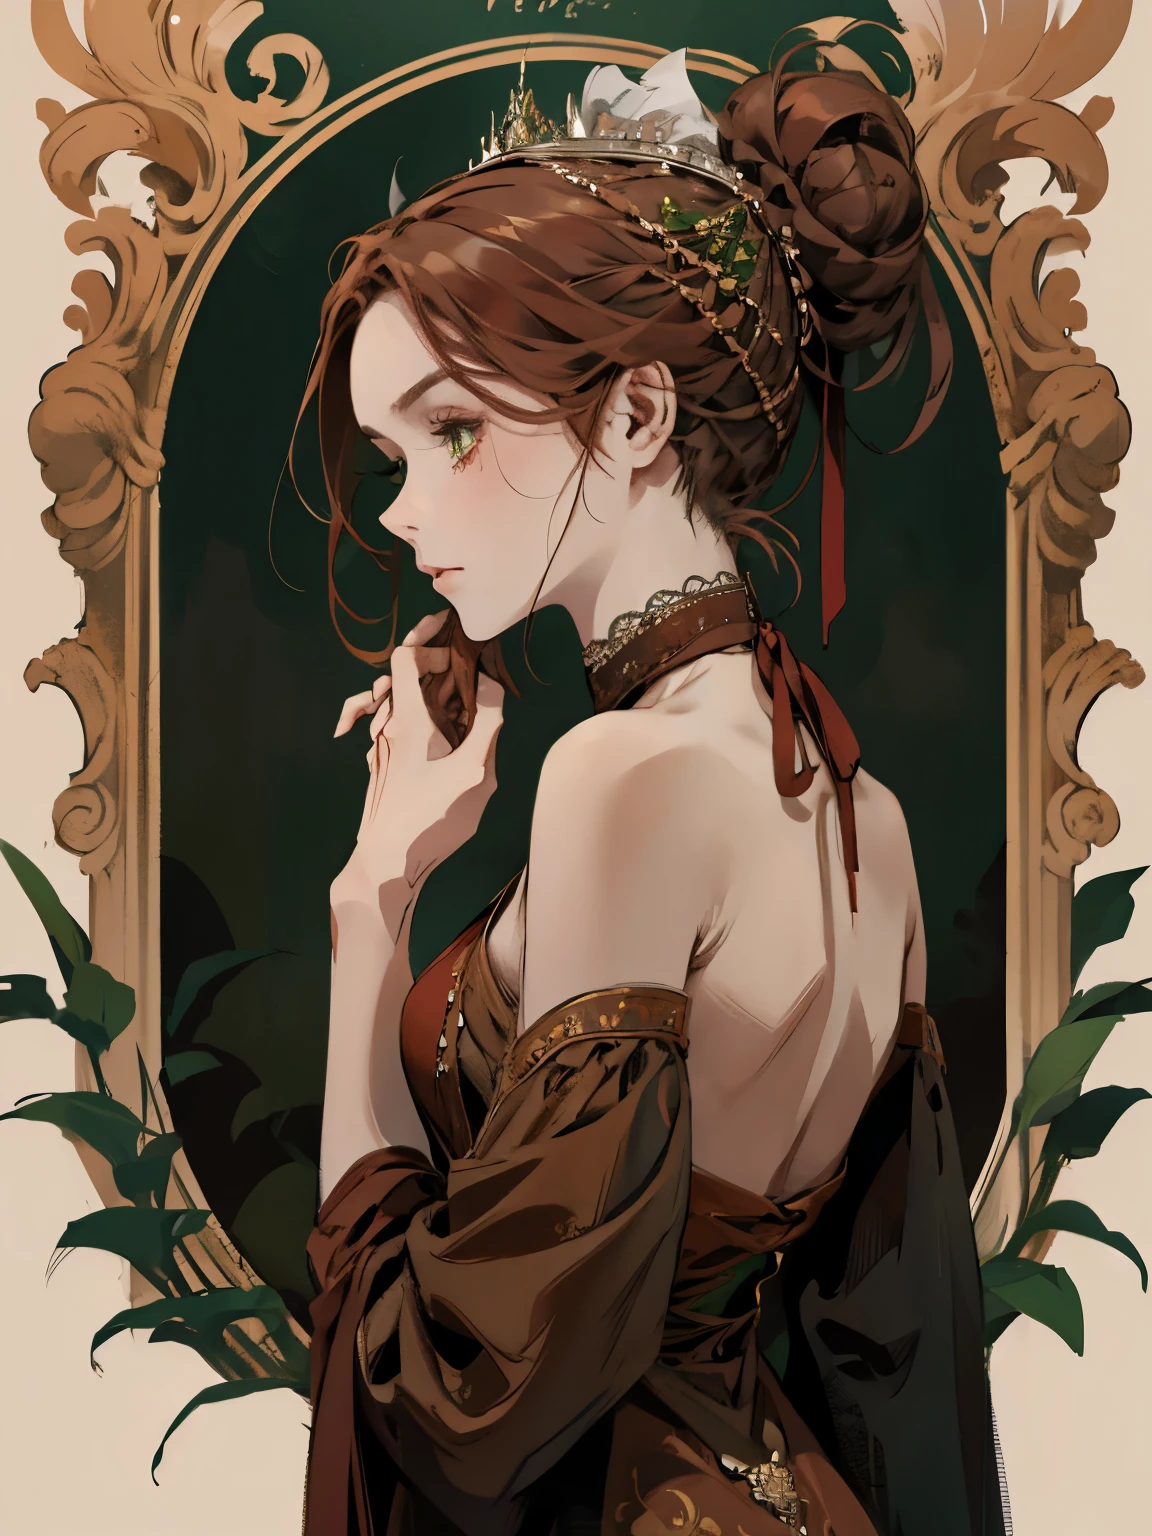 1つ, , 髪を束ねた女性のデジタル絵画, 茶色の赤毛, 緑の目, 1800年代の若い貴族の女性 , 穏やかな顔, 長い顔, 見下ろす, 濃い赤のドレス, ((ネック丈のドレス)), 布, 肩を覆う, 頭髪の周りの装飾肖像画スタイル, 目をそらす, 美しく緑豊かな庭園で